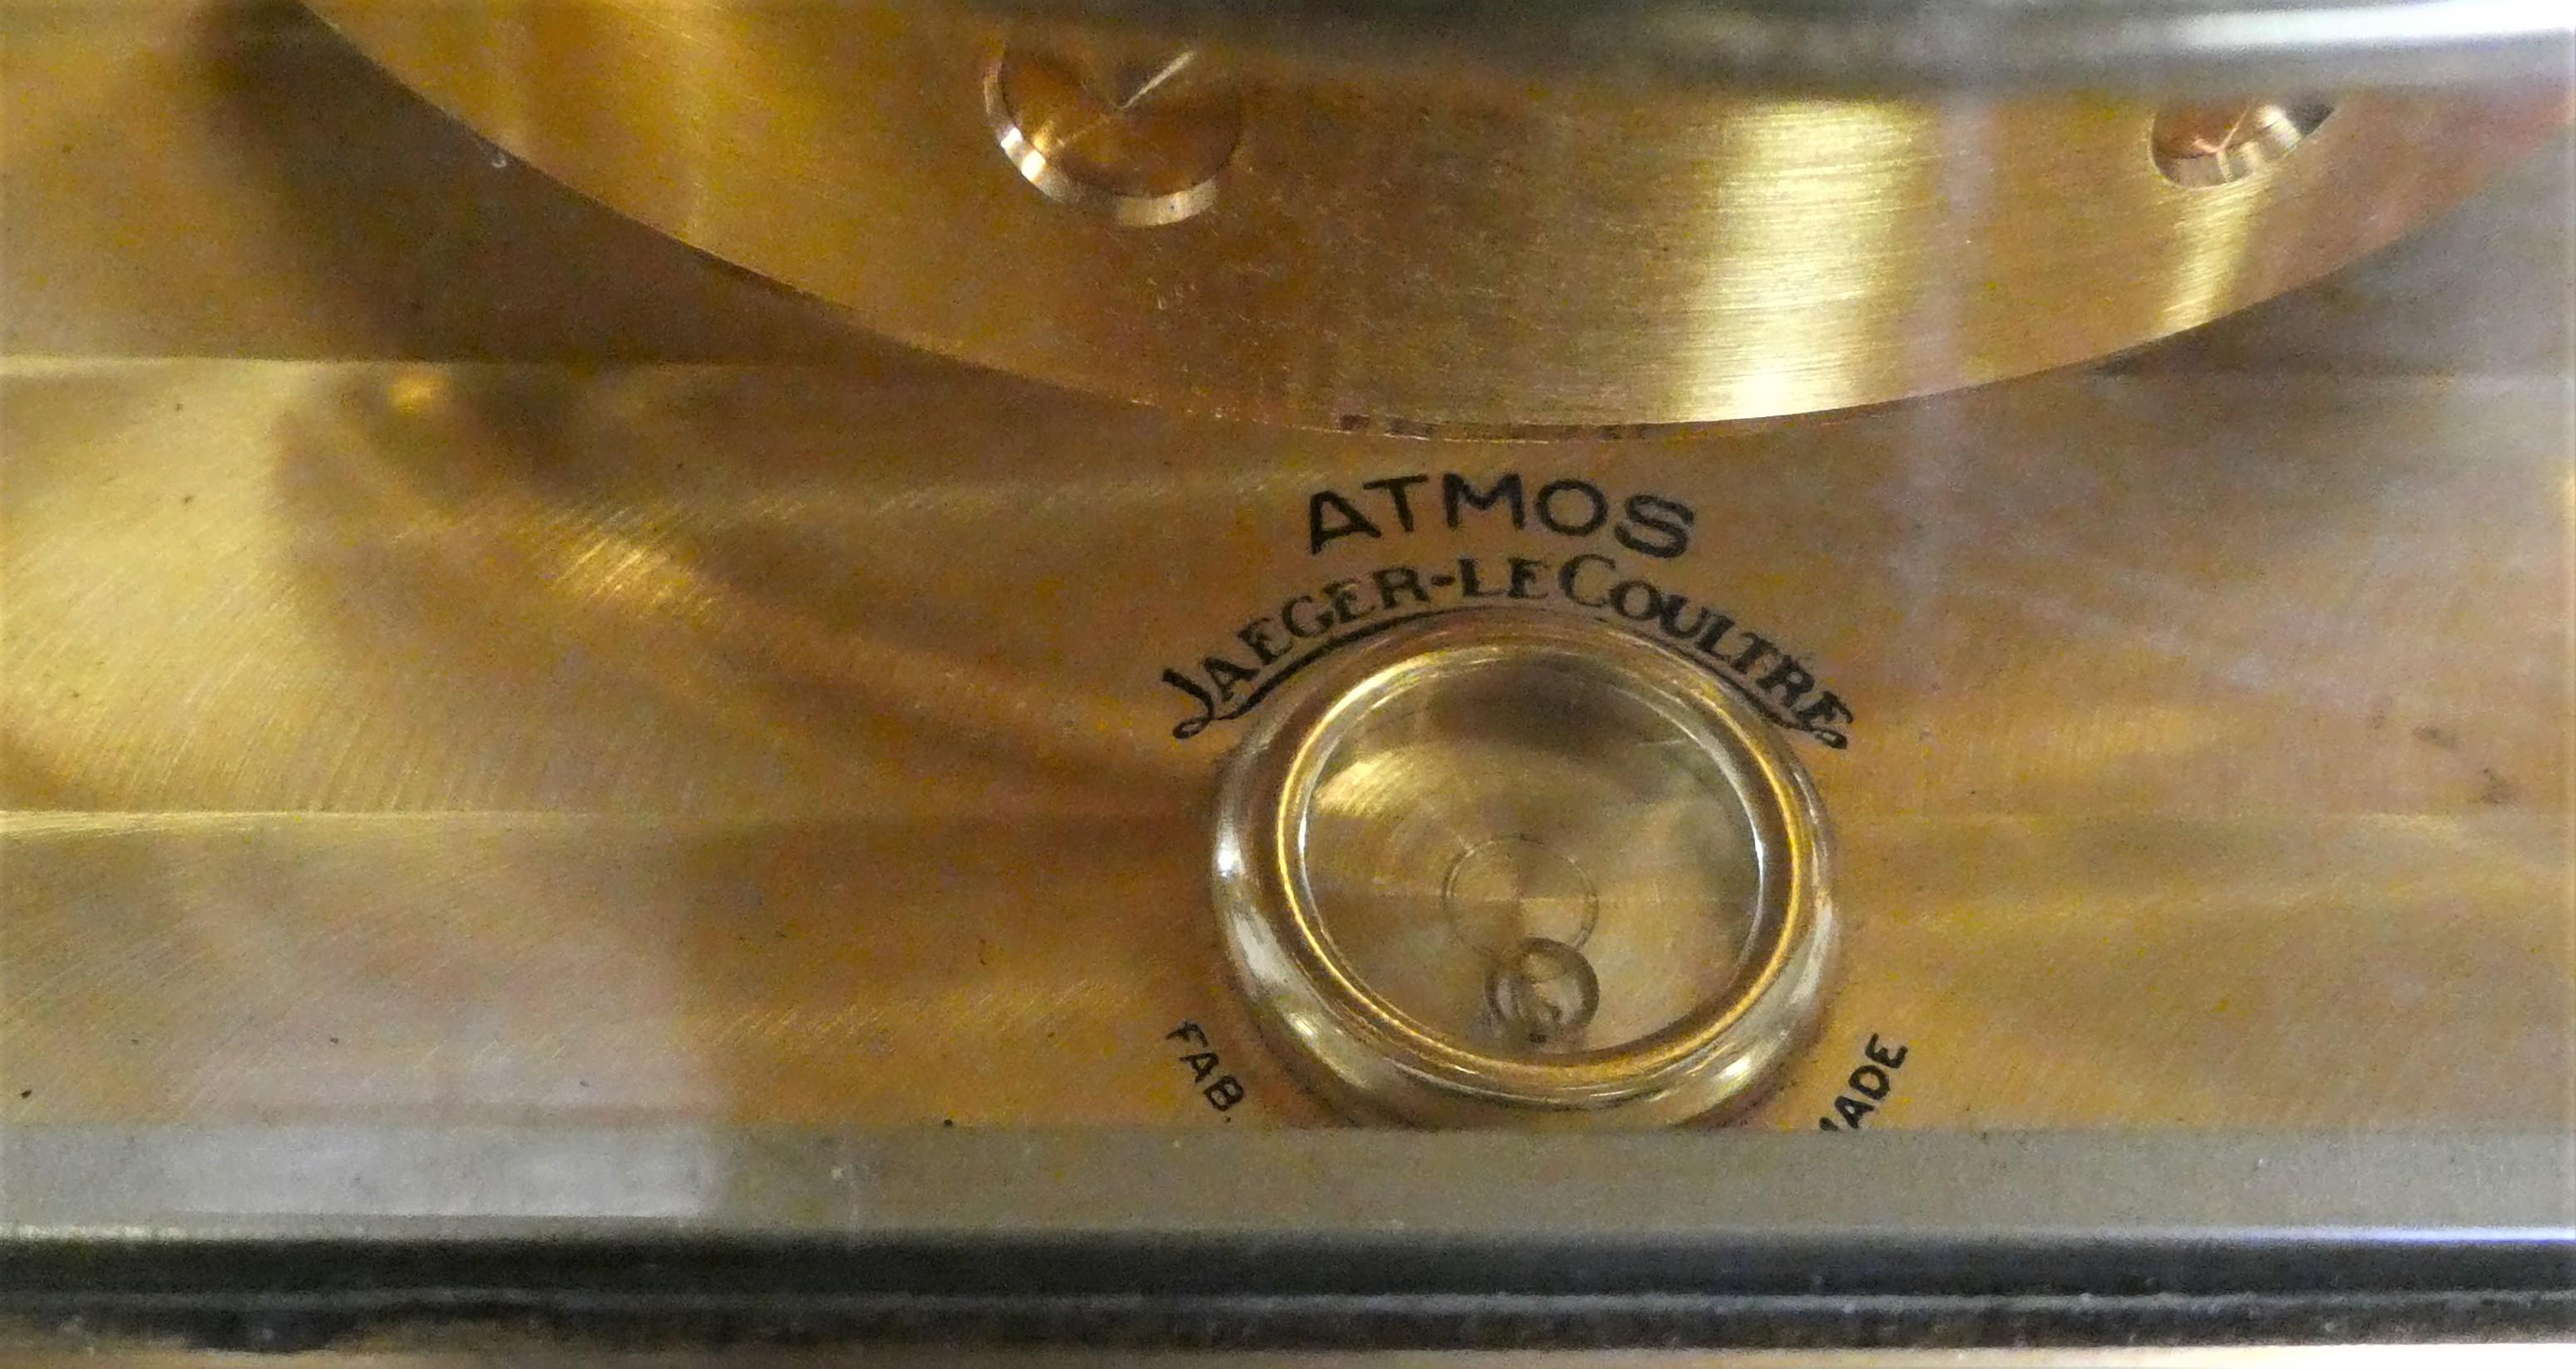 lecoultre atmos clock value